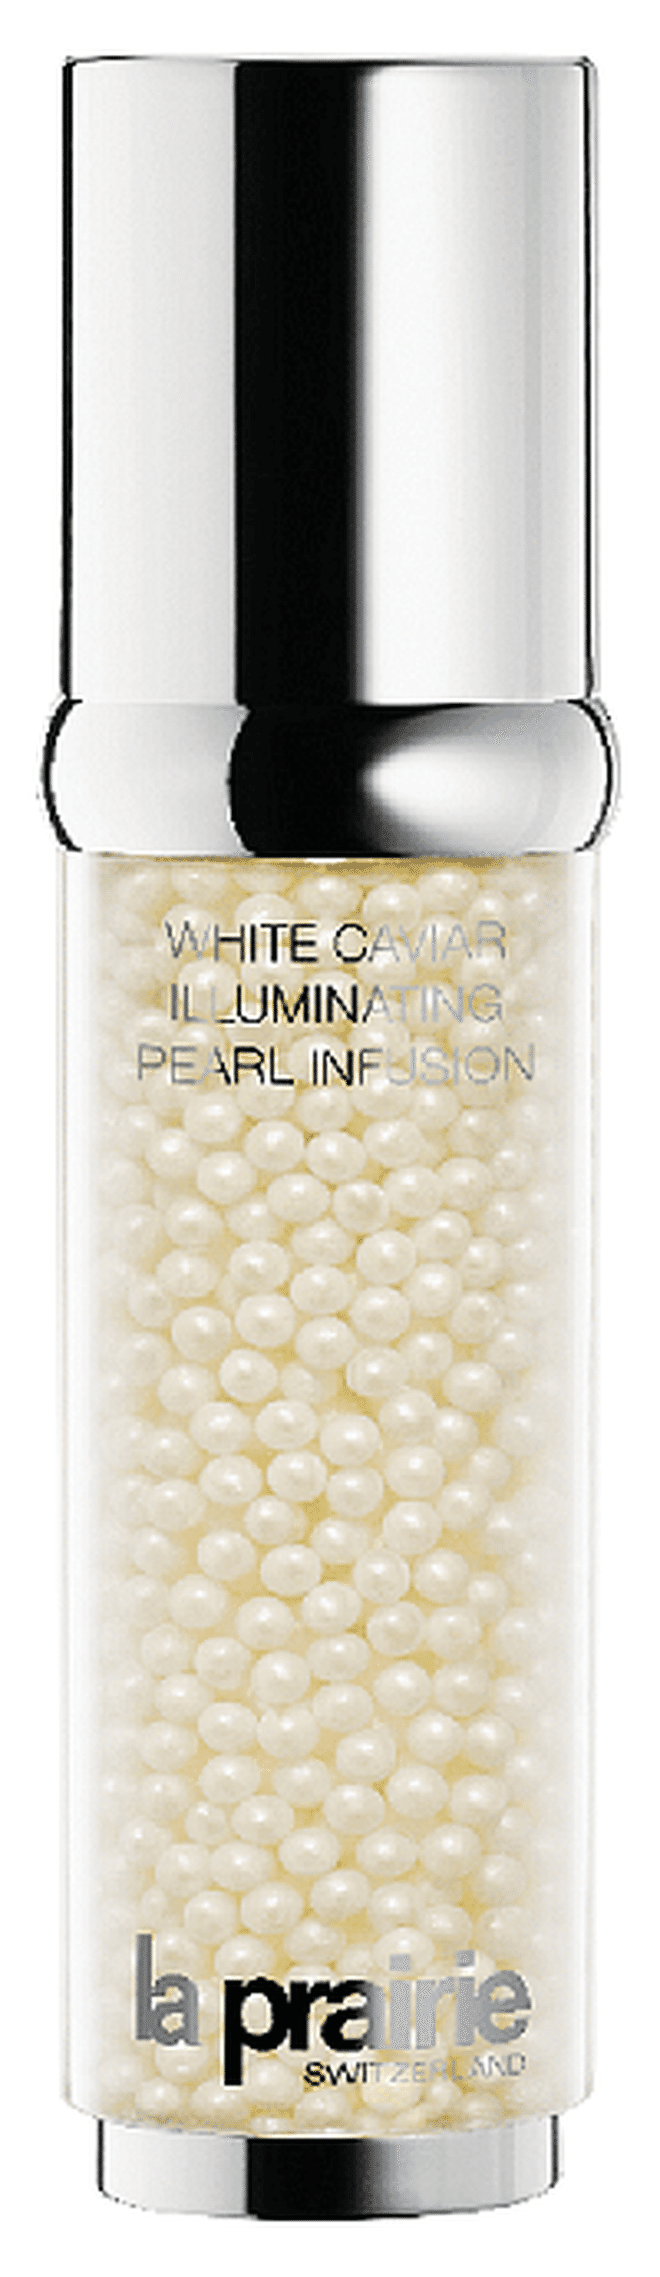 White Caviar Illuminating Pearl Infusion, $850, La Prairie